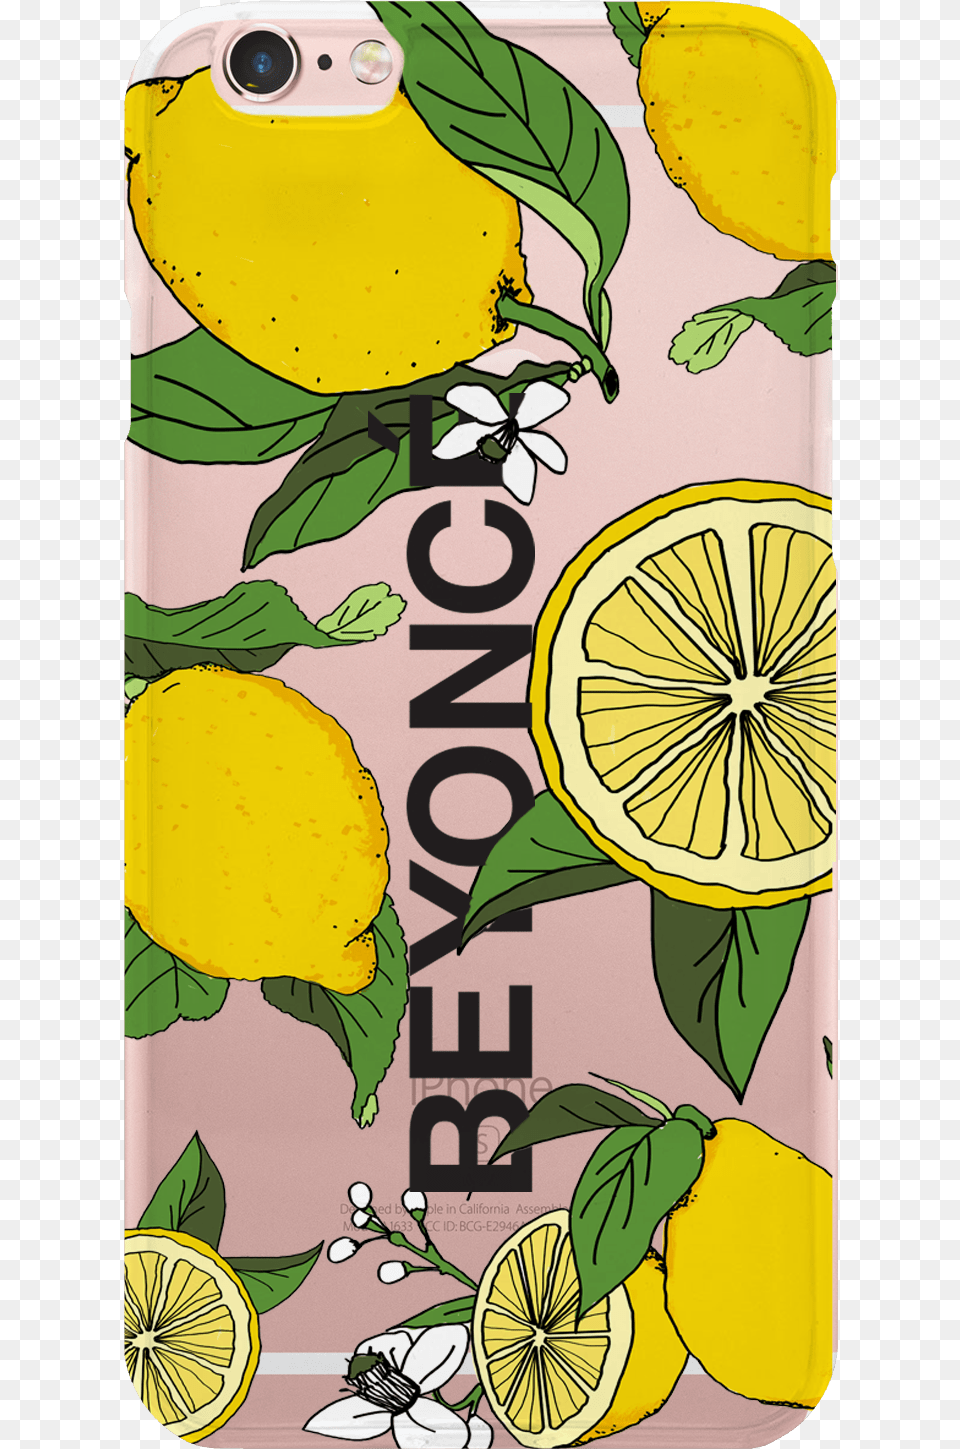 Beyonce Lemonade Merch, Citrus Fruit, Food, Fruit, Plant Png Image